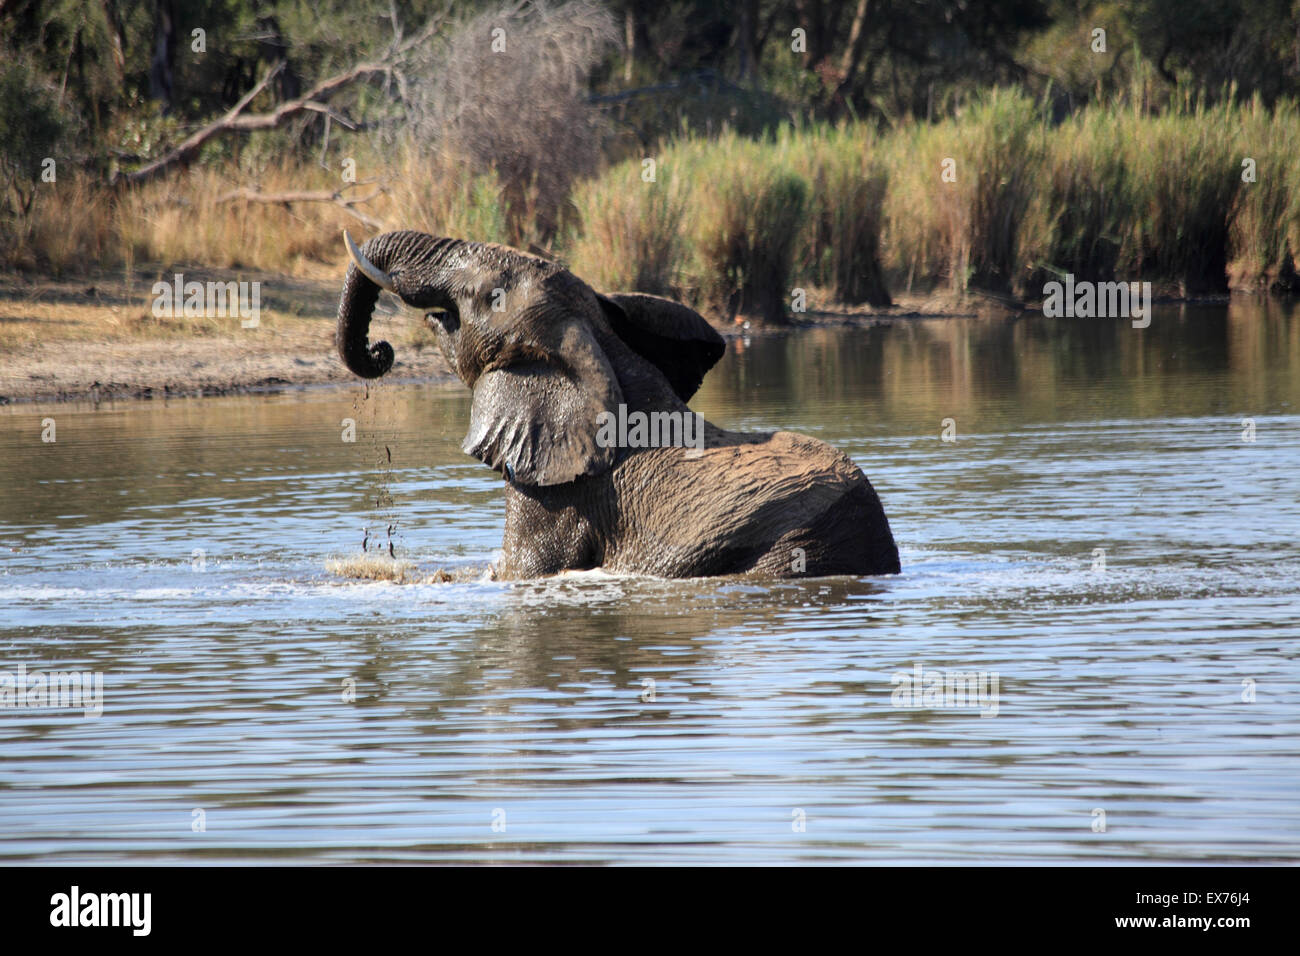 Elephant bathing in Lake Panic Stock Photo